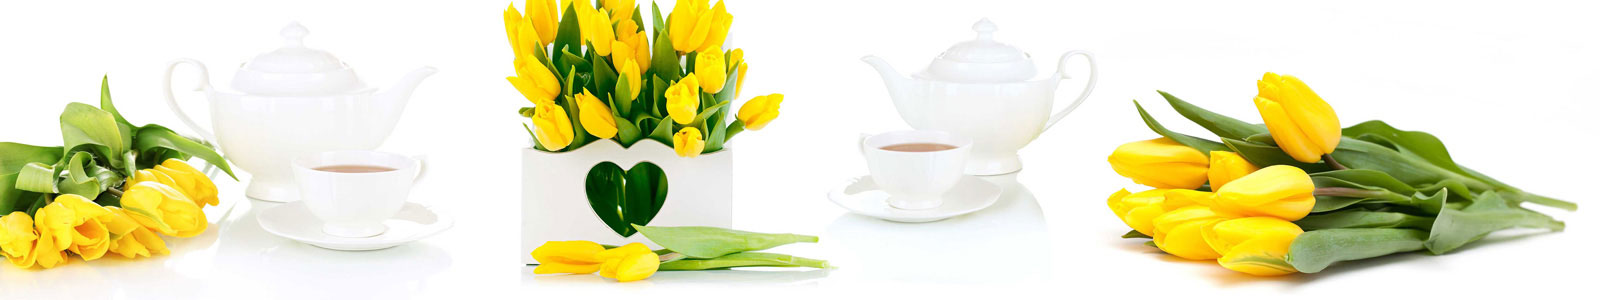 №6116 - Свежие тюльпаны с чаем на белом фоне